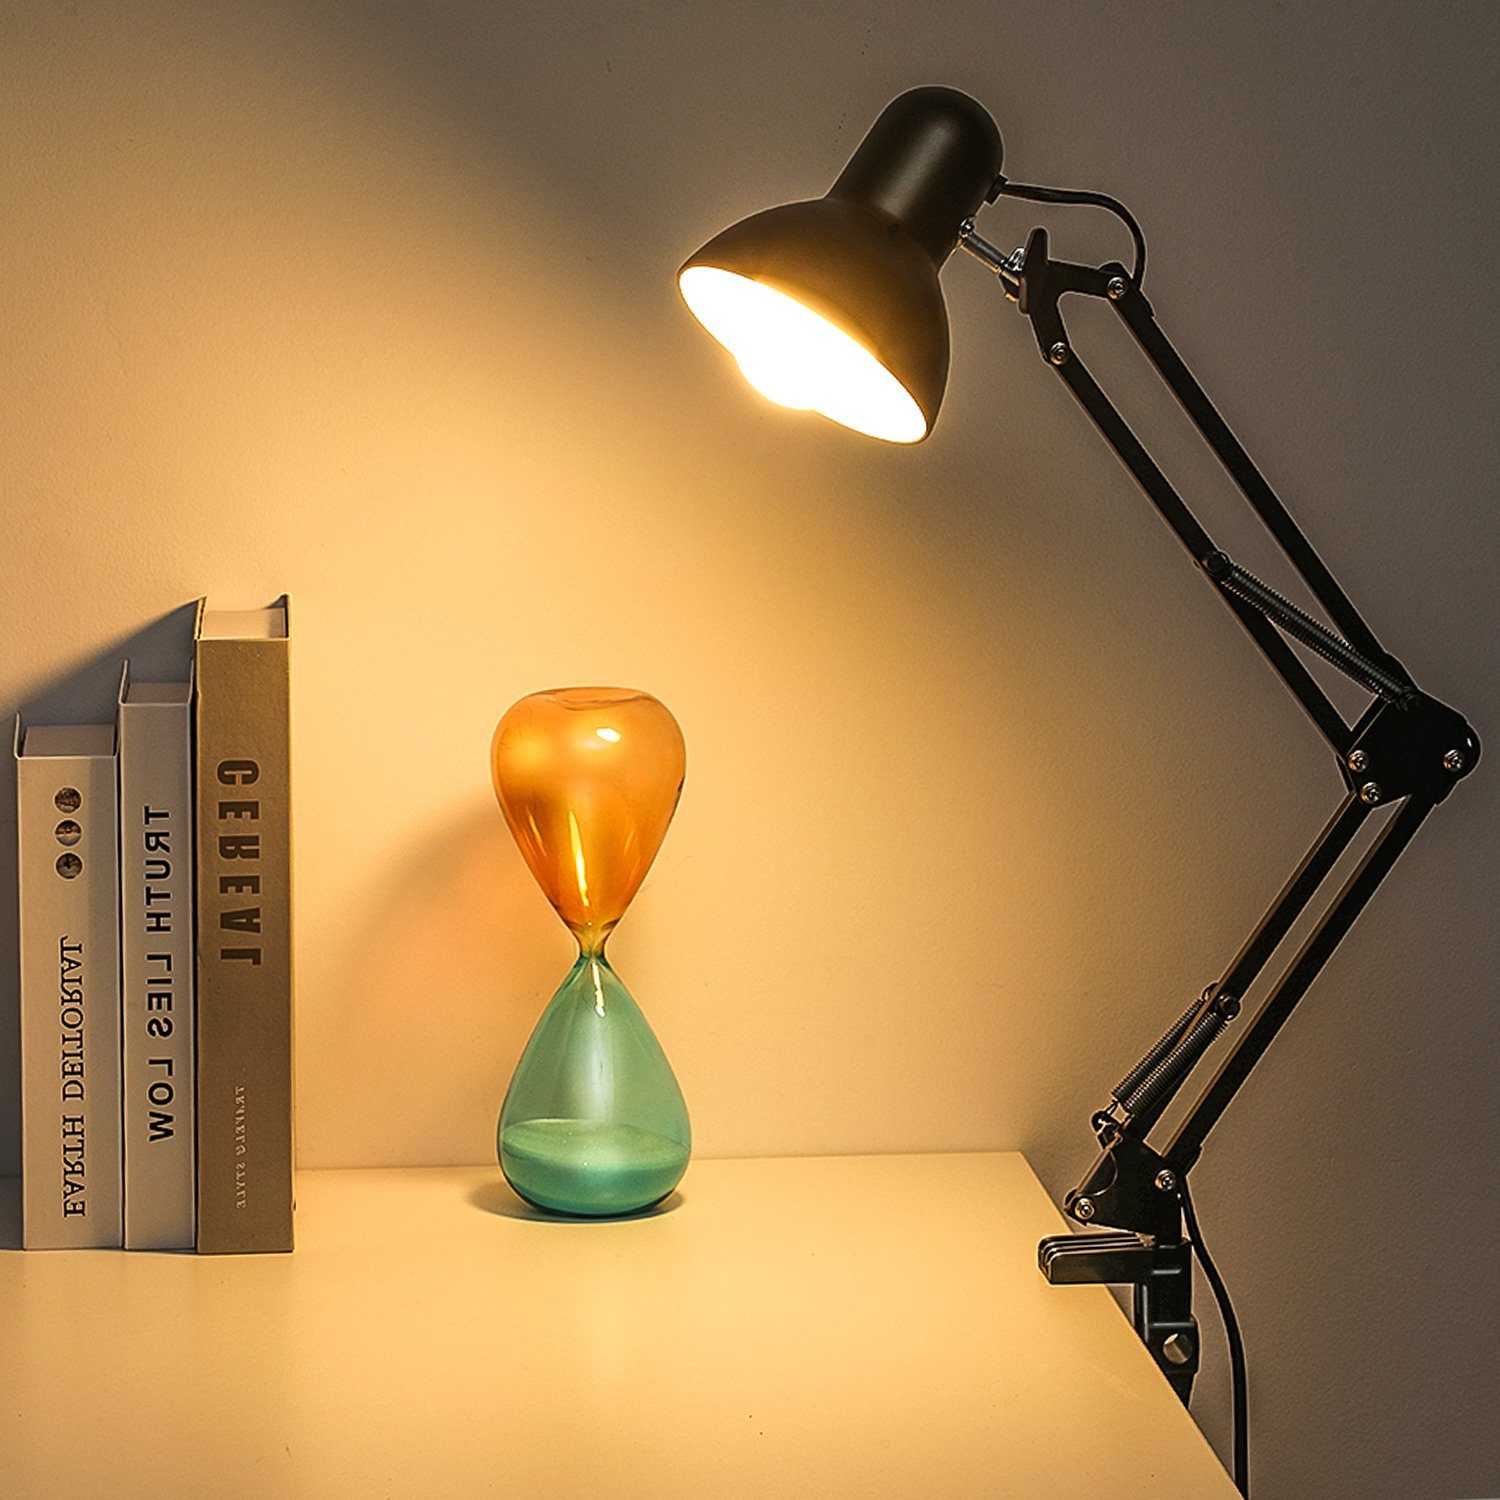 LETGOSPT Schreibtischlampe E27 Amerikanische Schreibtischlampe, Tischlampe mit Verstellbare Kinder Schreibtisch Klemmleuchte Gelenkarm, Leselampe, wechselbar, für Drehbar LED Lampe 360°